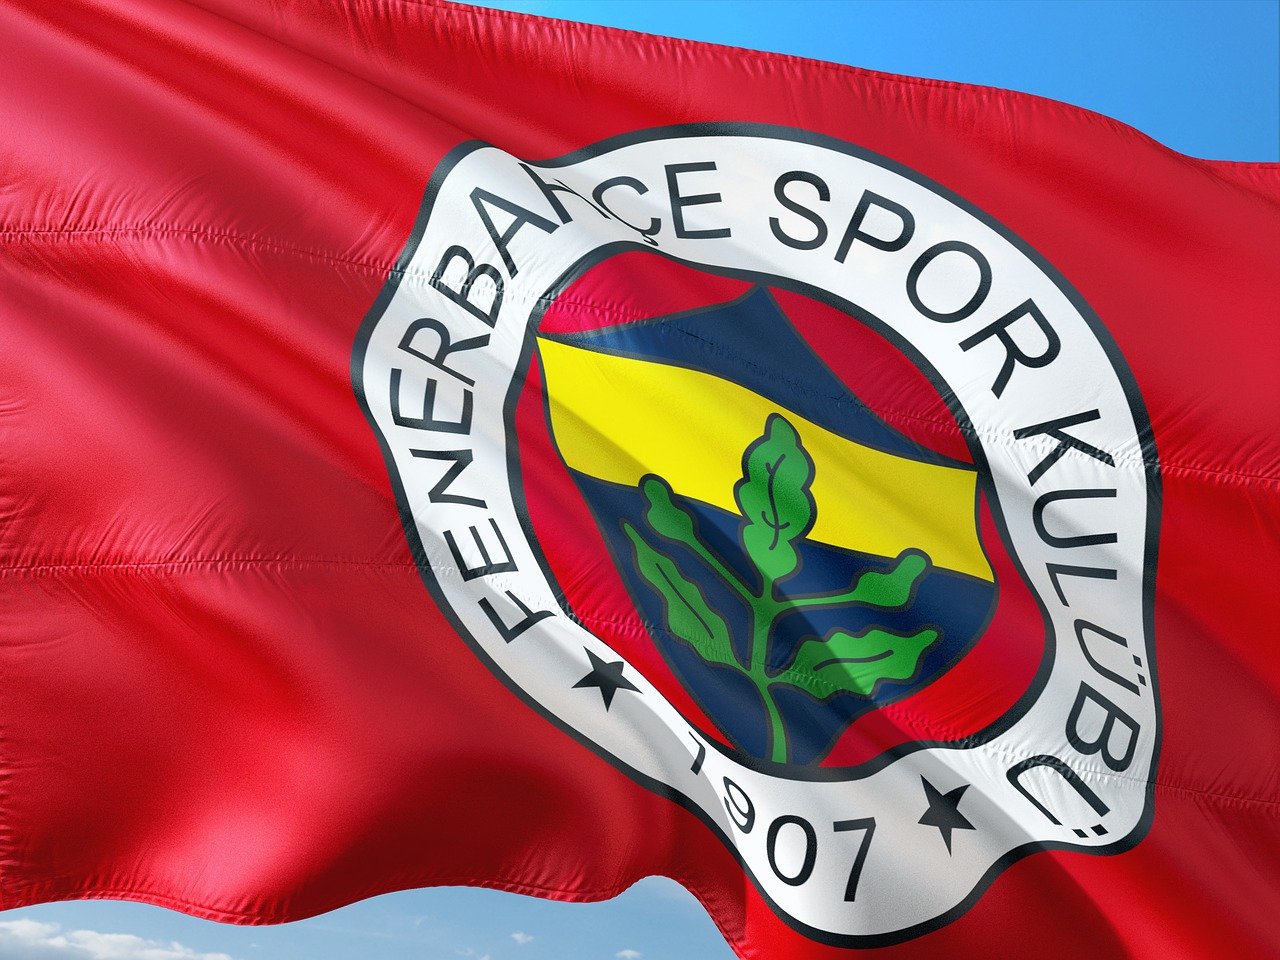 türkscher Fußballverein Fenerbahce|Şükrü-Saracoğlu-Stadion